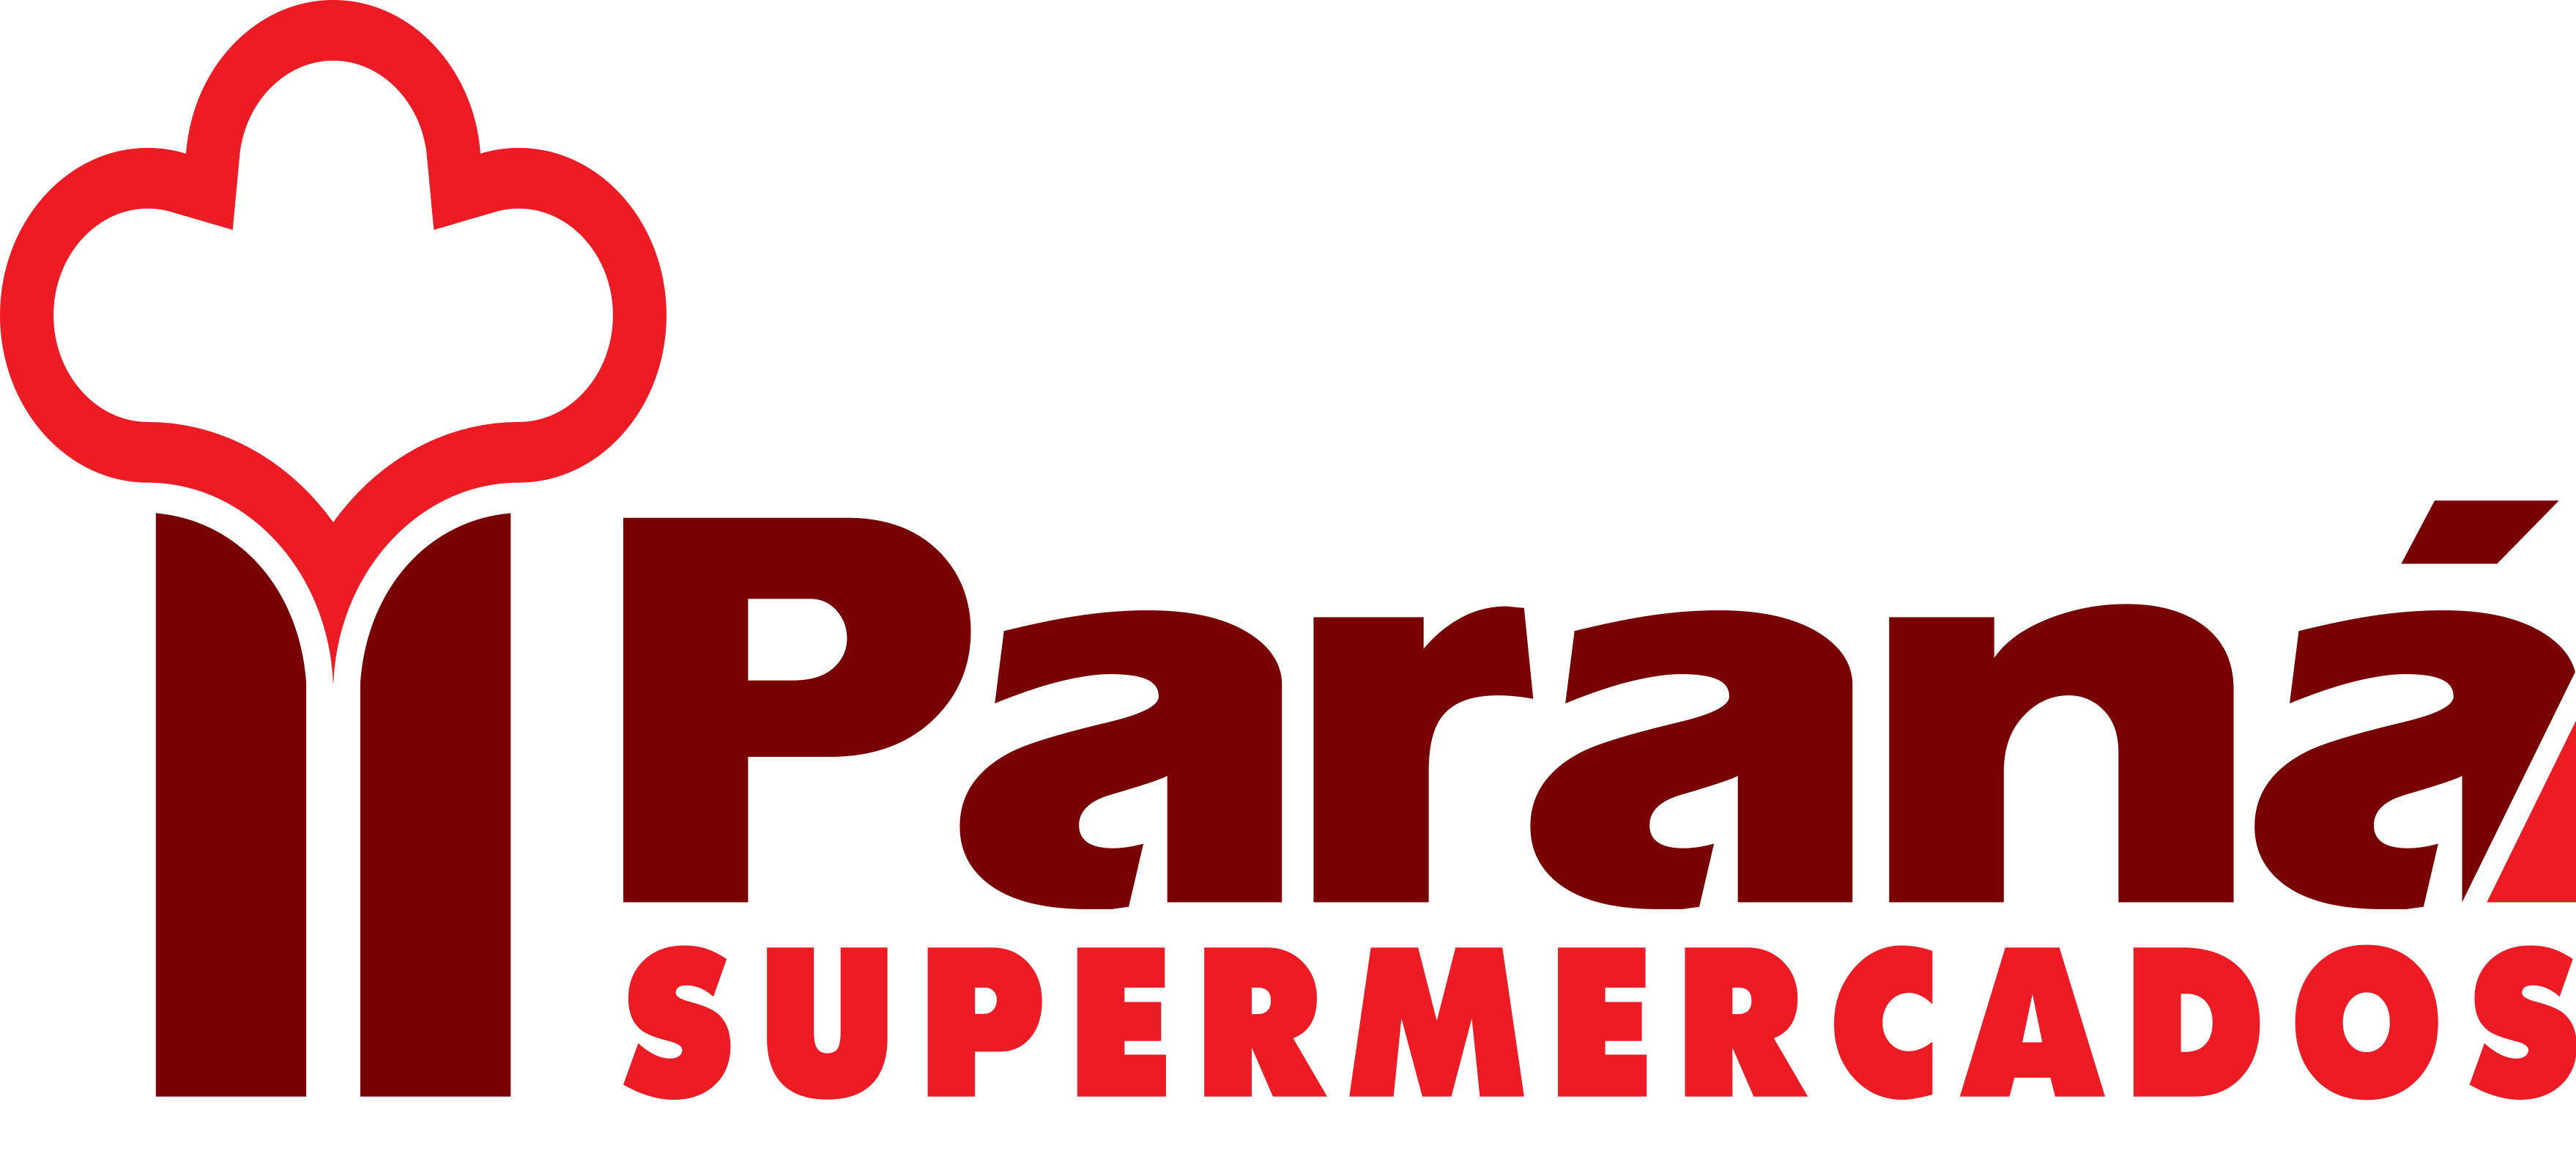 Paraná Supermercados